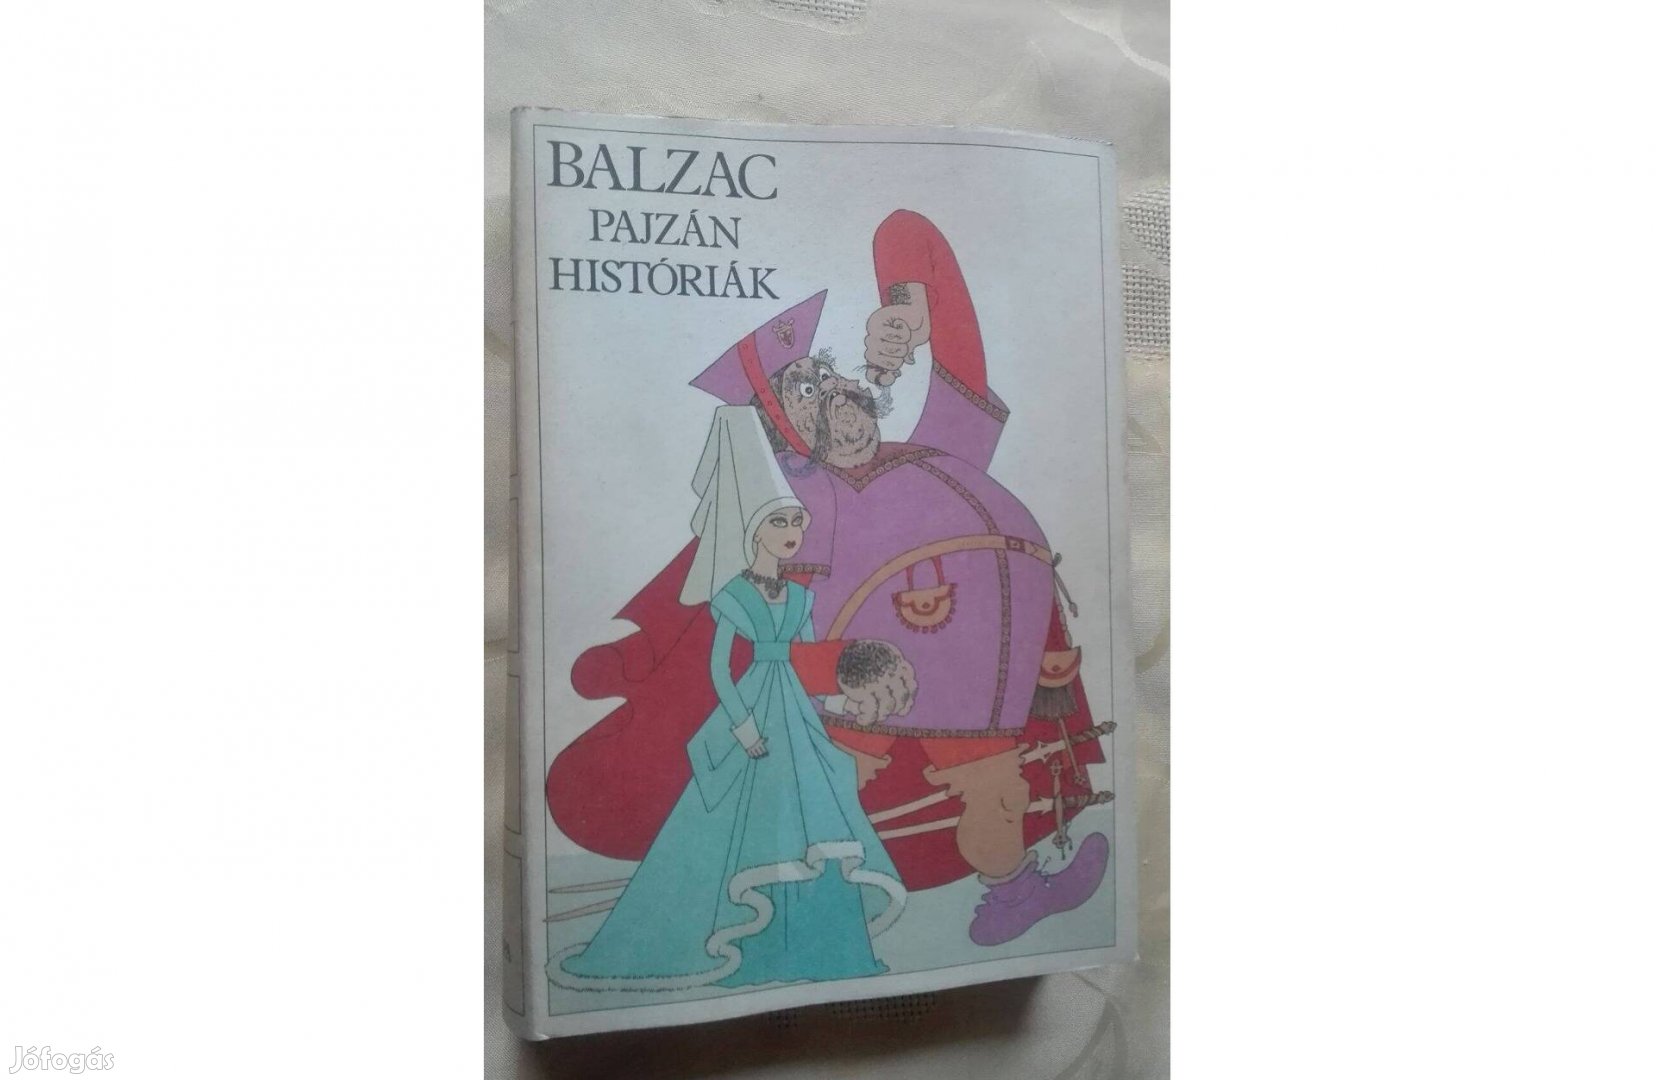 Pajzán históriák, írta: Honoré de Balzac (olvasatlan)